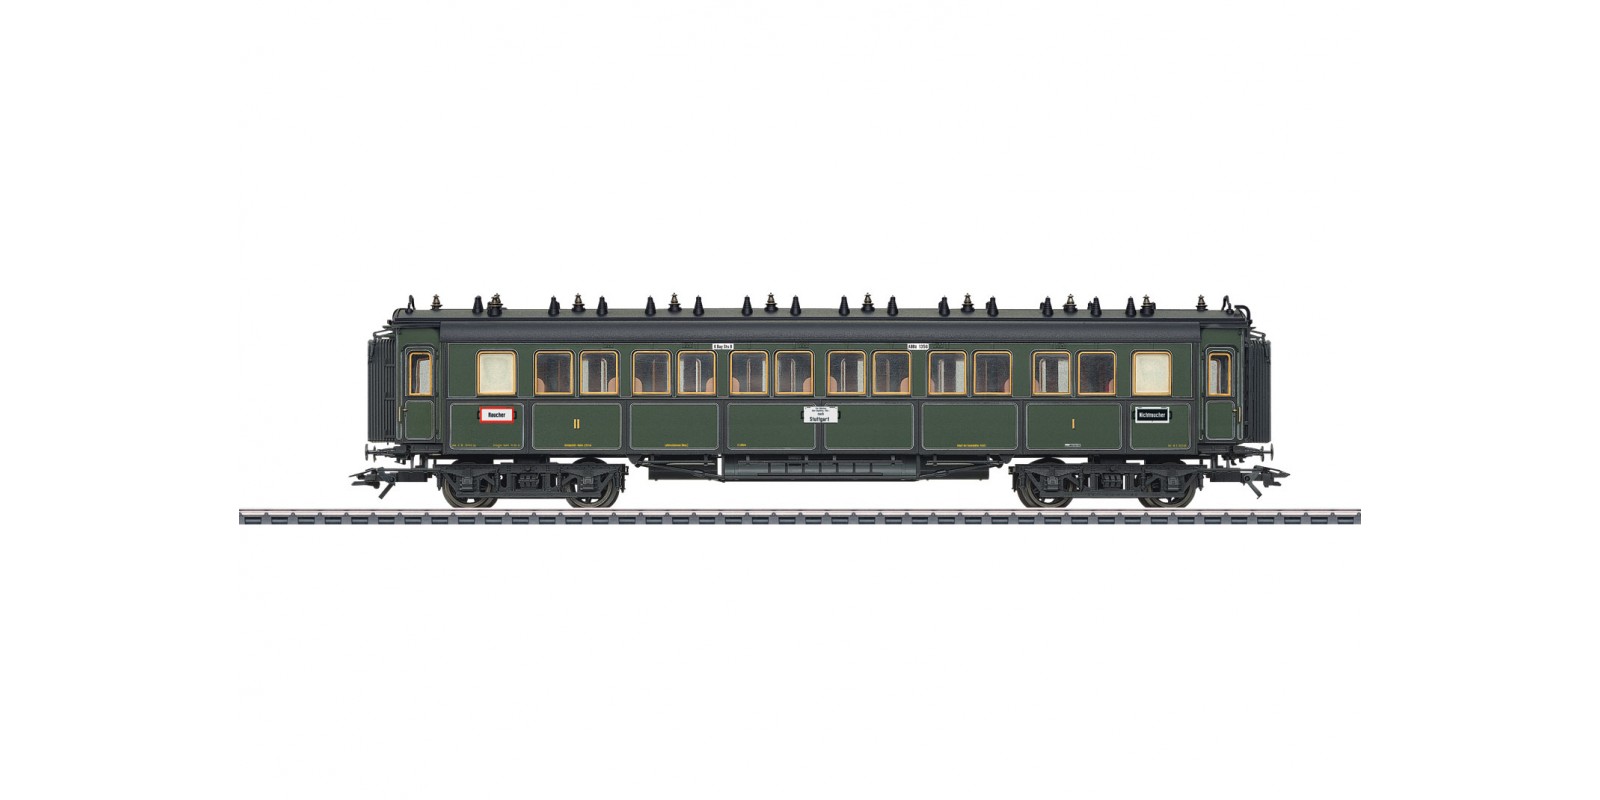 41369 Type ABBü Express Train Passenger Car